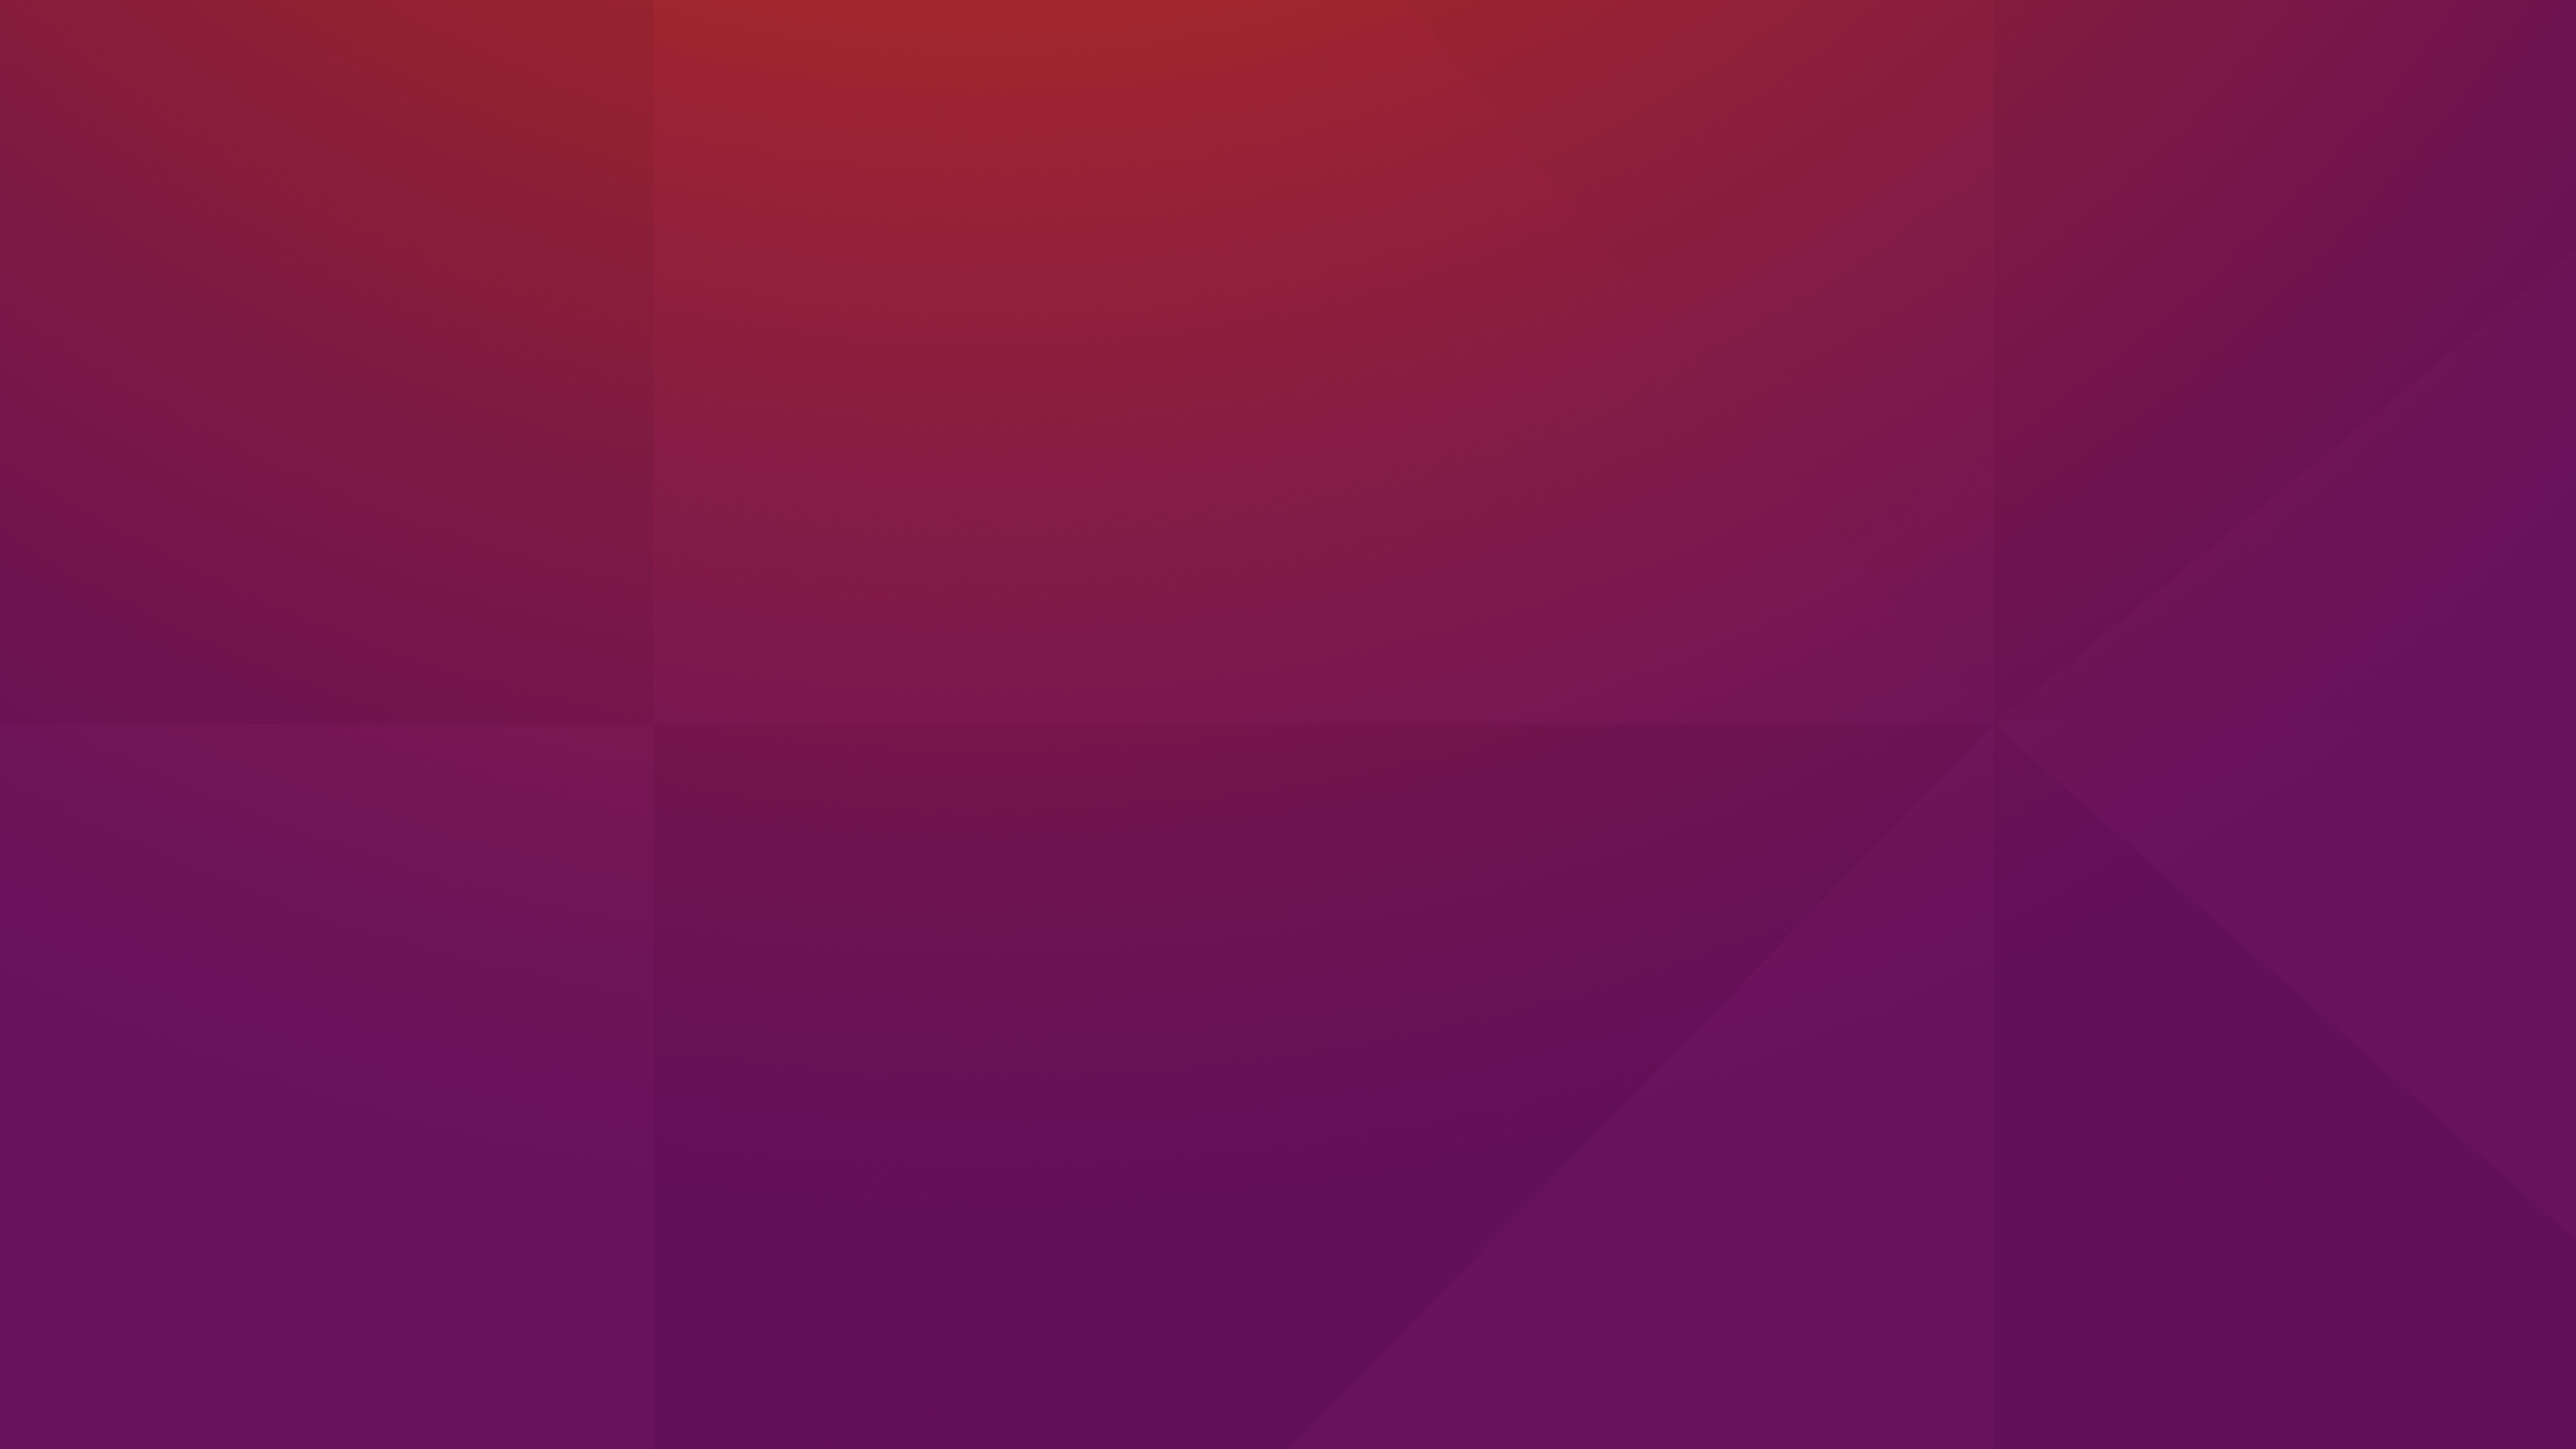 This Is The Default Desktop Wallpaper For Ubuntu